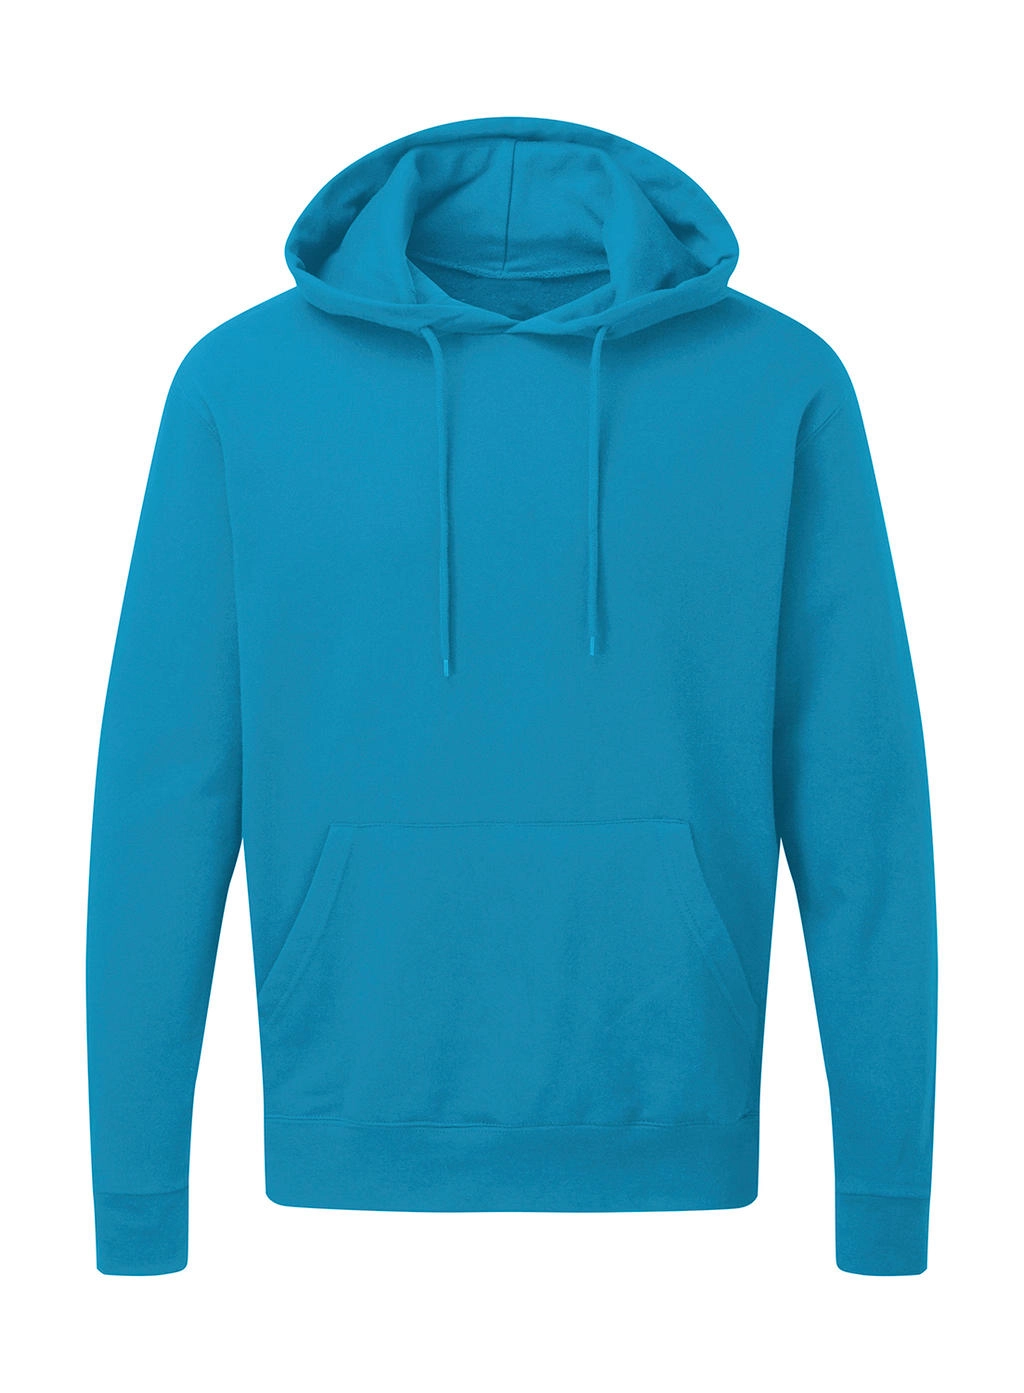 Hooded Sweatshirt Men zum Besticken und Bedrucken in der Farbe Turquoise mit Ihren Logo, Schriftzug oder Motiv.